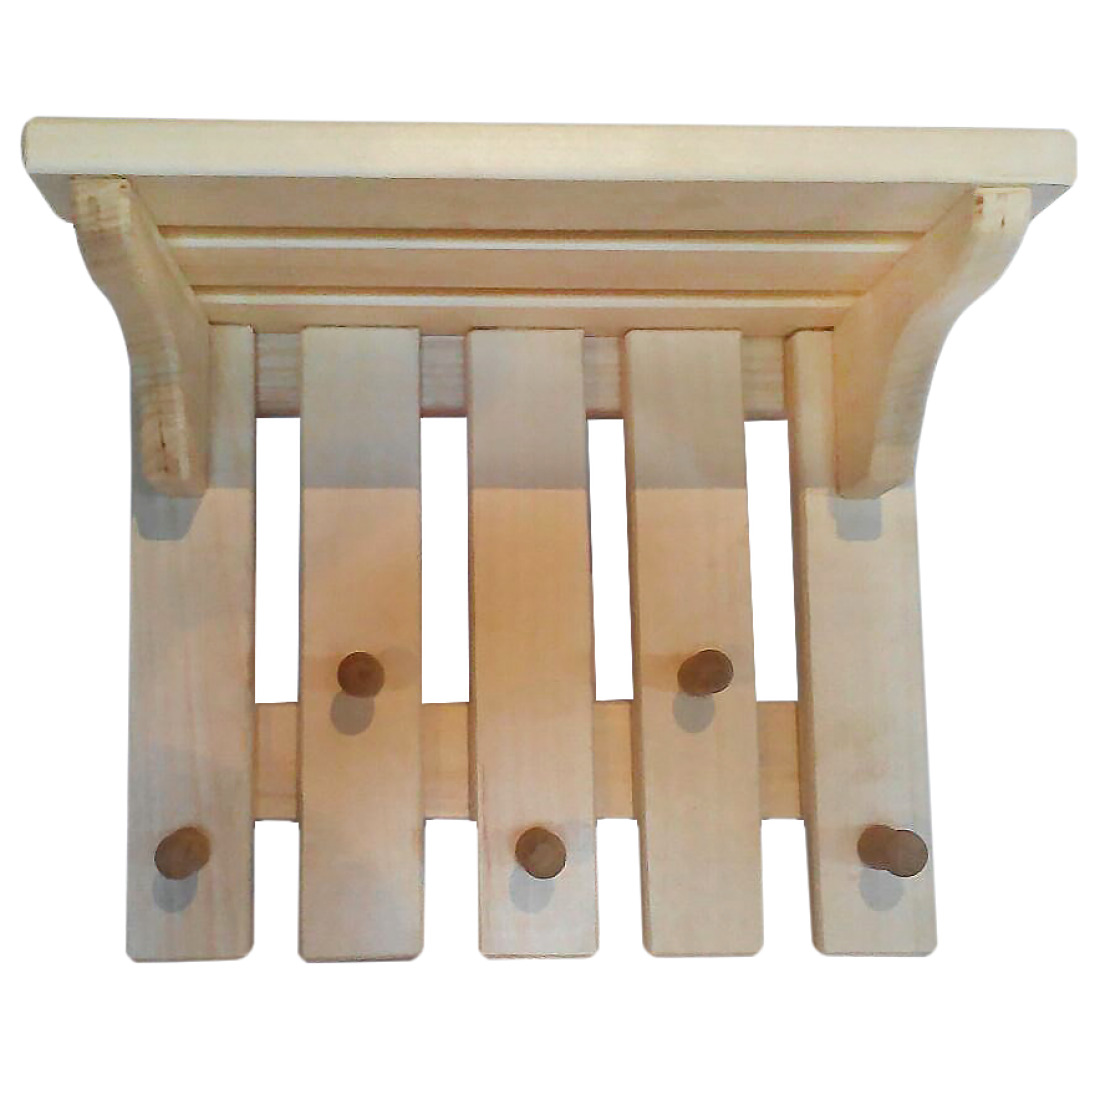 деревянная вешалка для одежды в баню